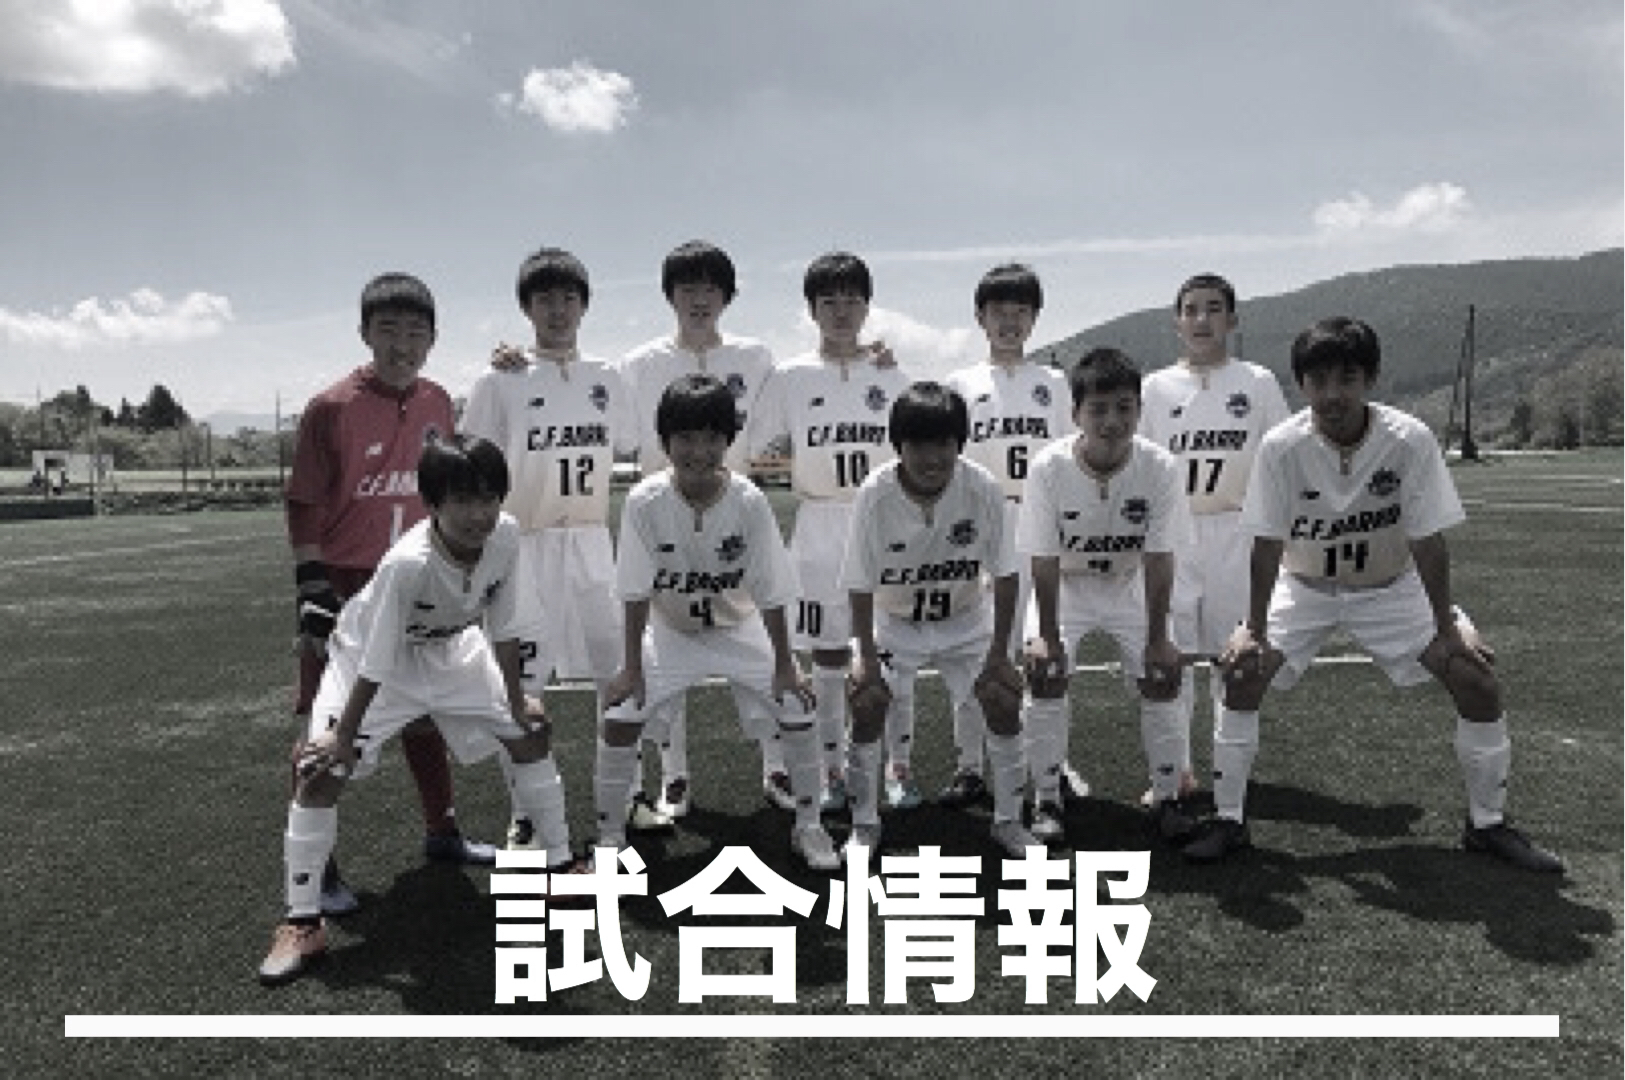 C F Barro クラブバロ 長野県長野サッカークラブ